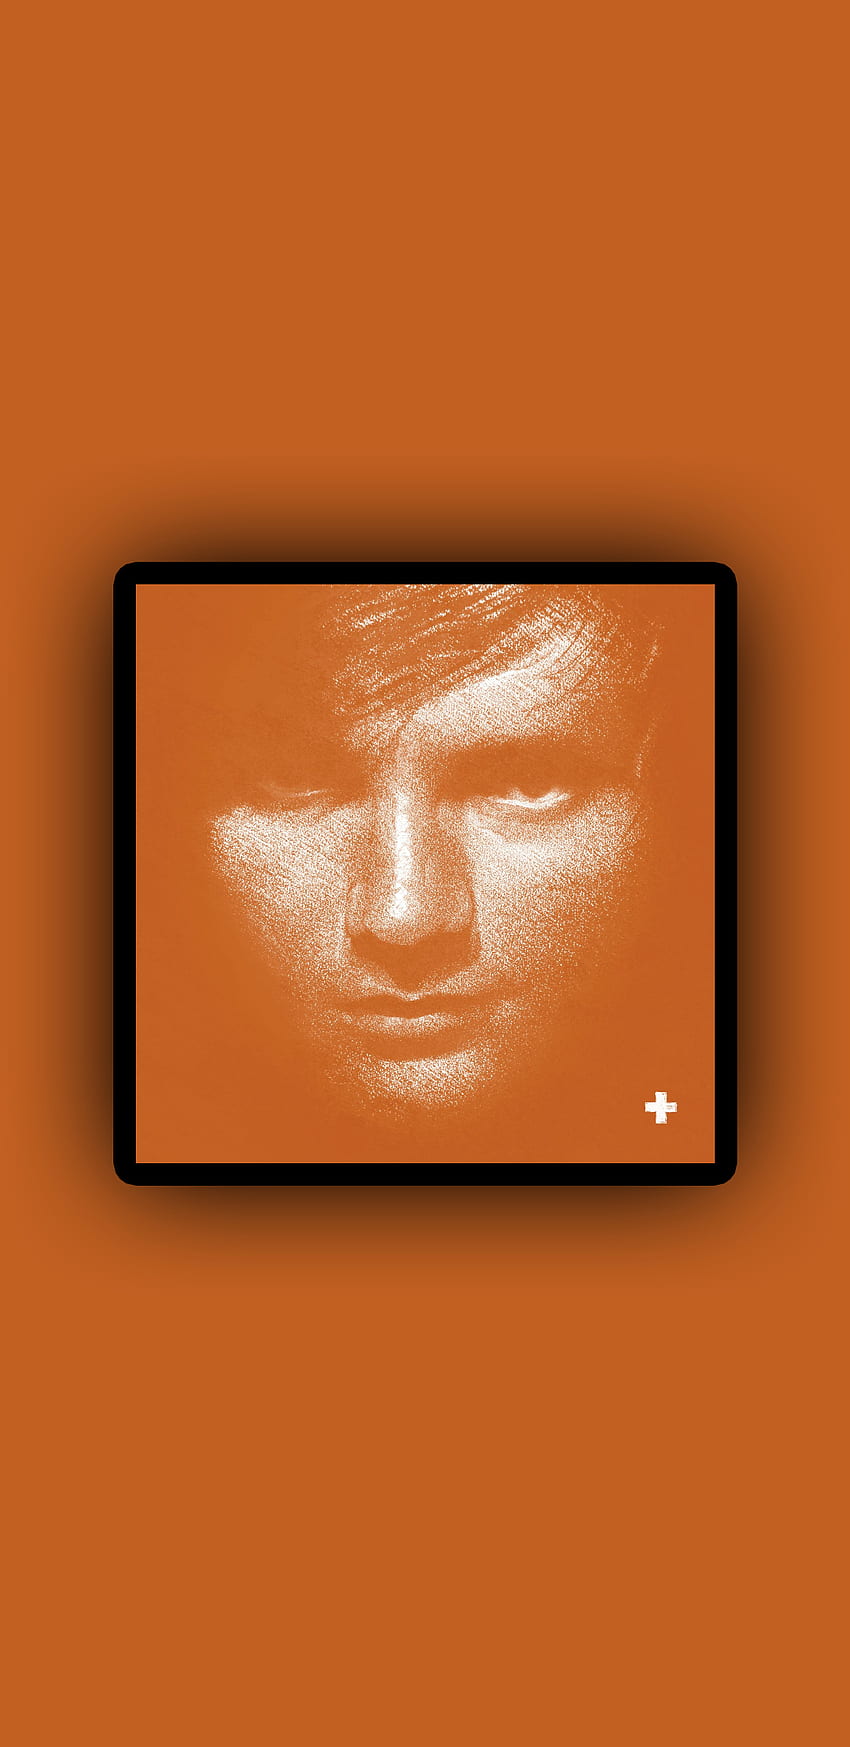 Ed Sheeran +, Pop, Ed Sheeran, Penyanyi, Musik, UK, Album, Plus, Orange wallpaper ponsel HD